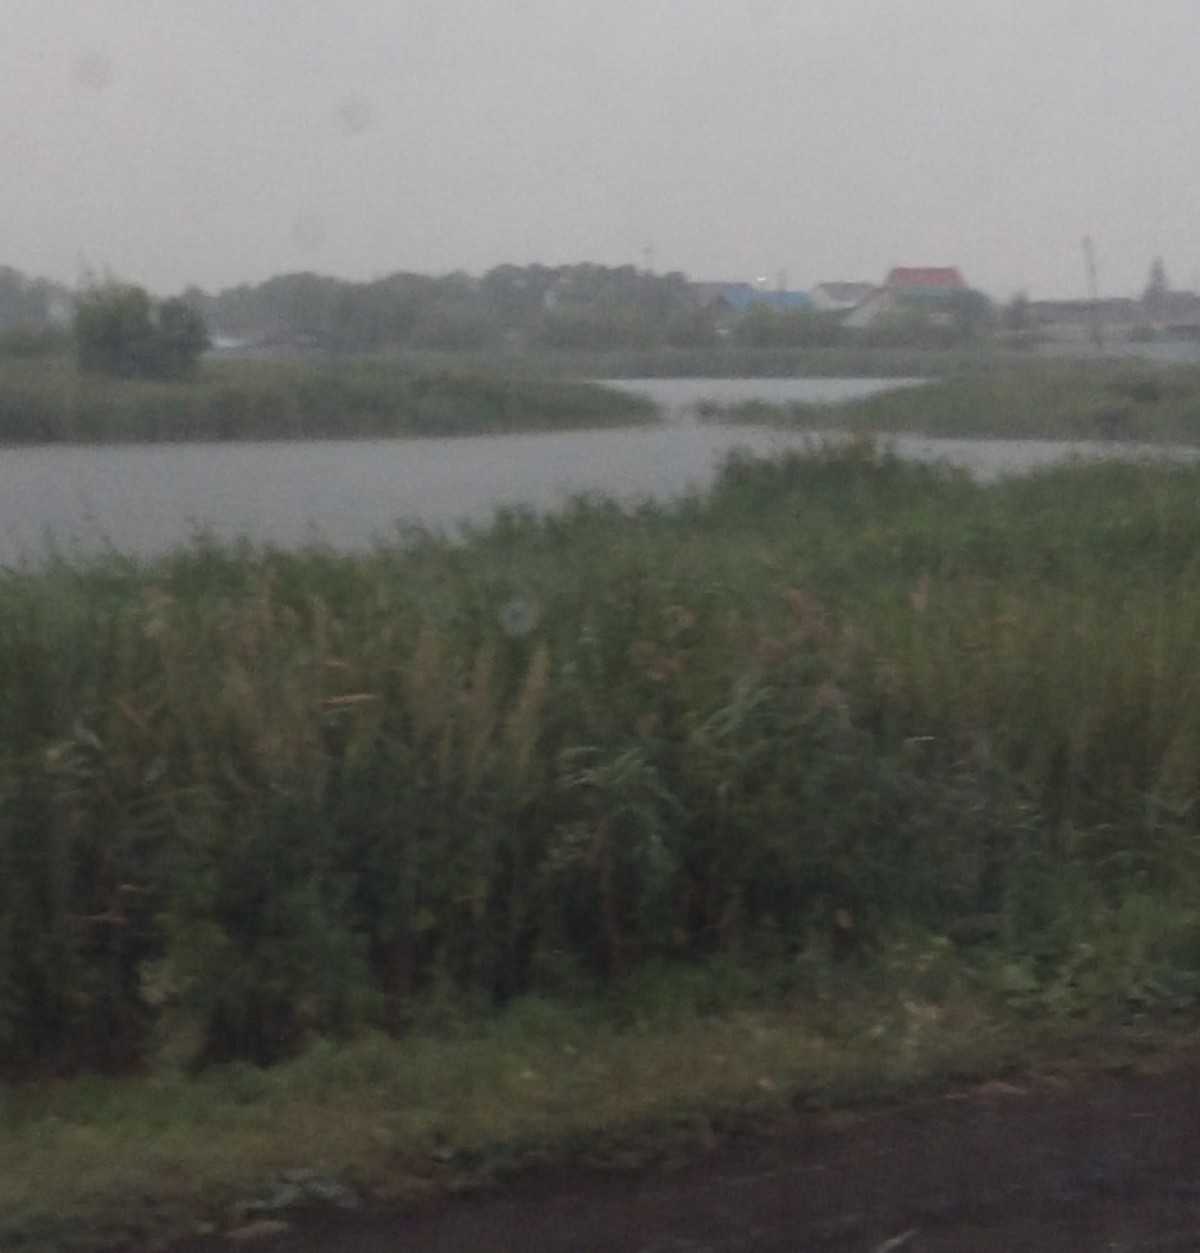 Челябинск накрыло ливнем